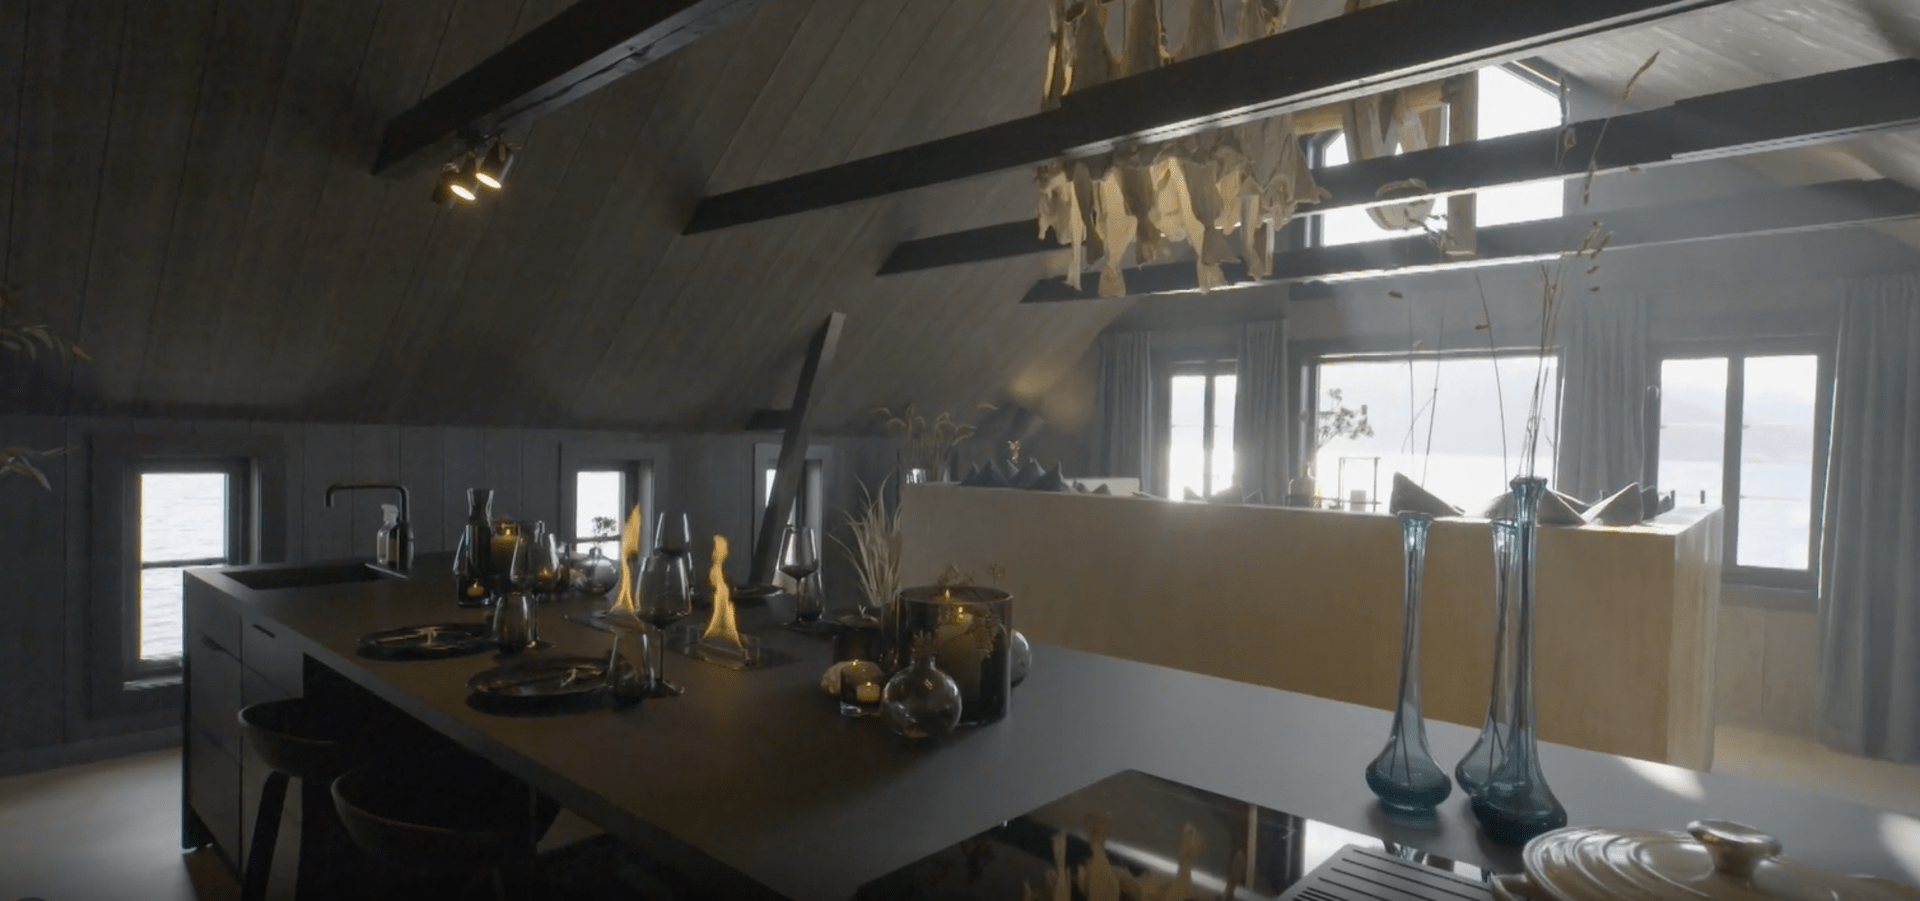 Prostoru vévodí nová kuchyňská linka a velký stůl